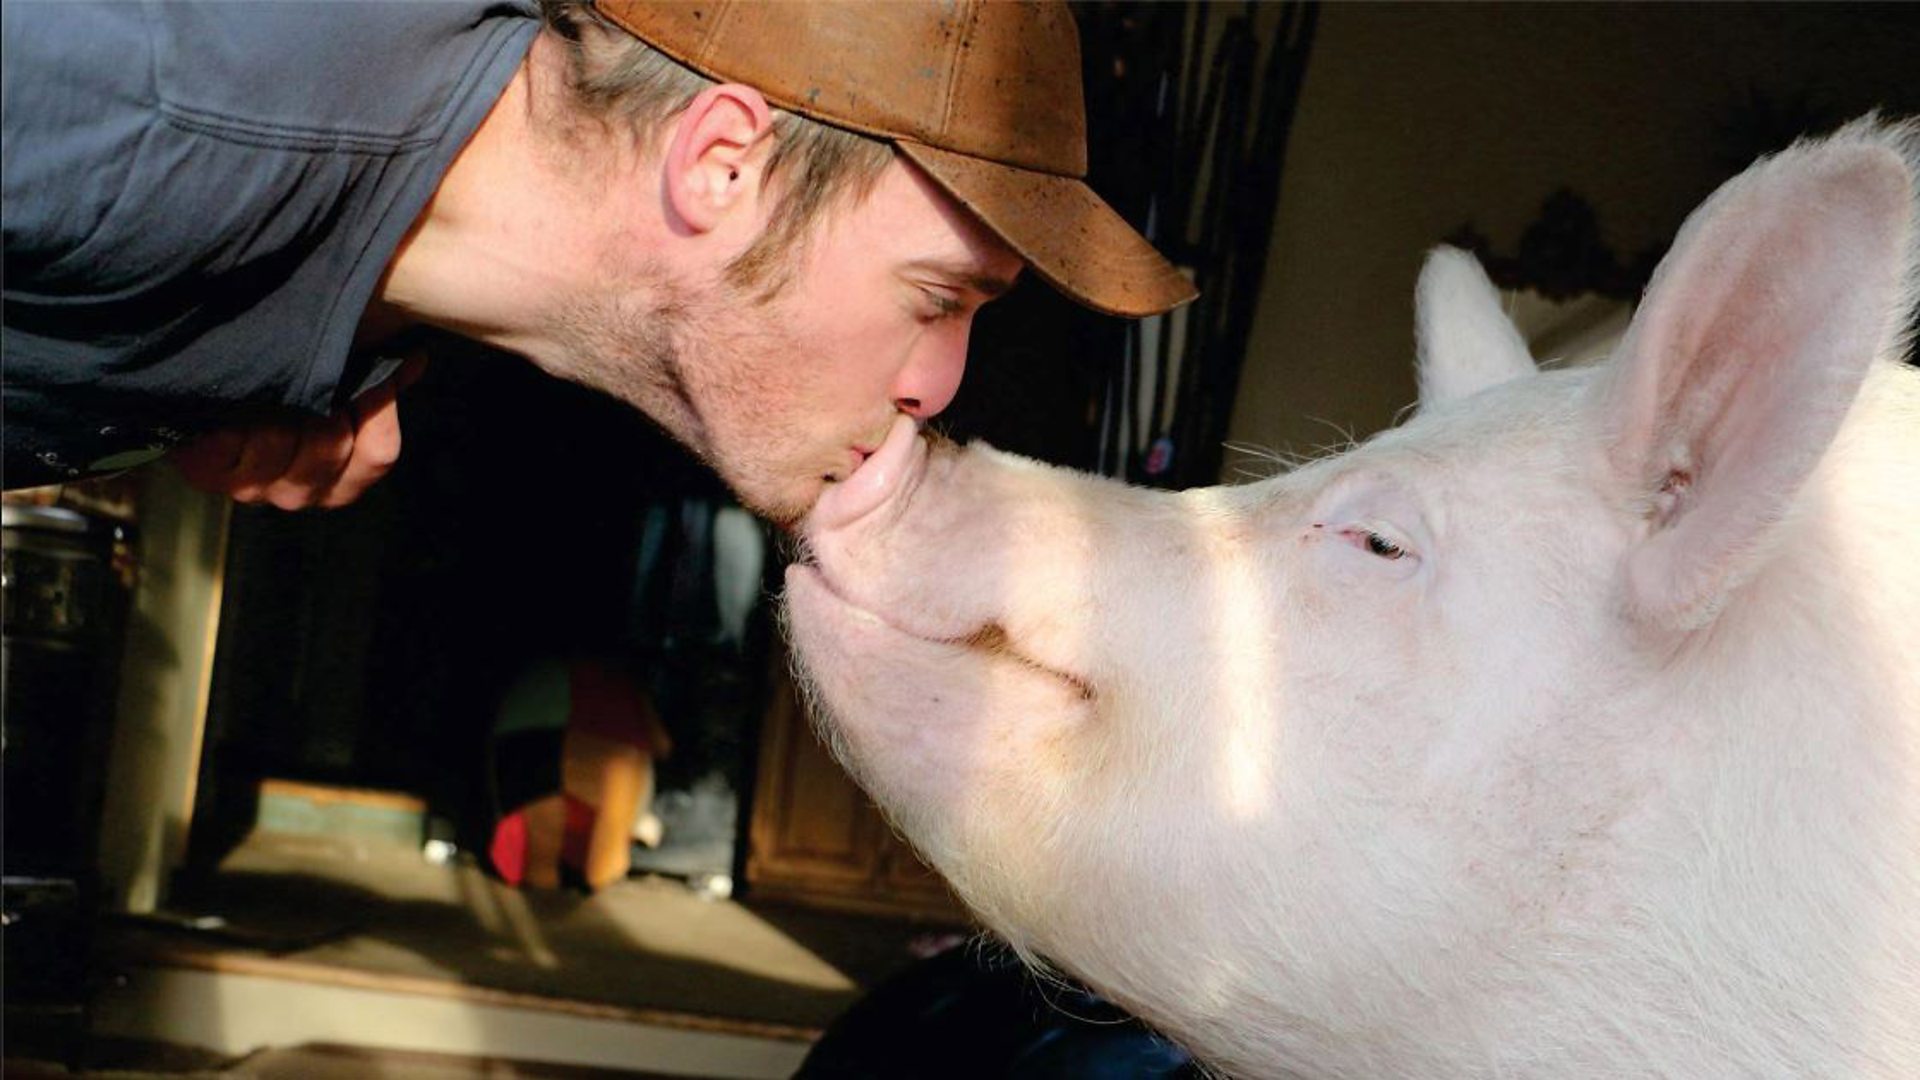 两只猪接吻图片